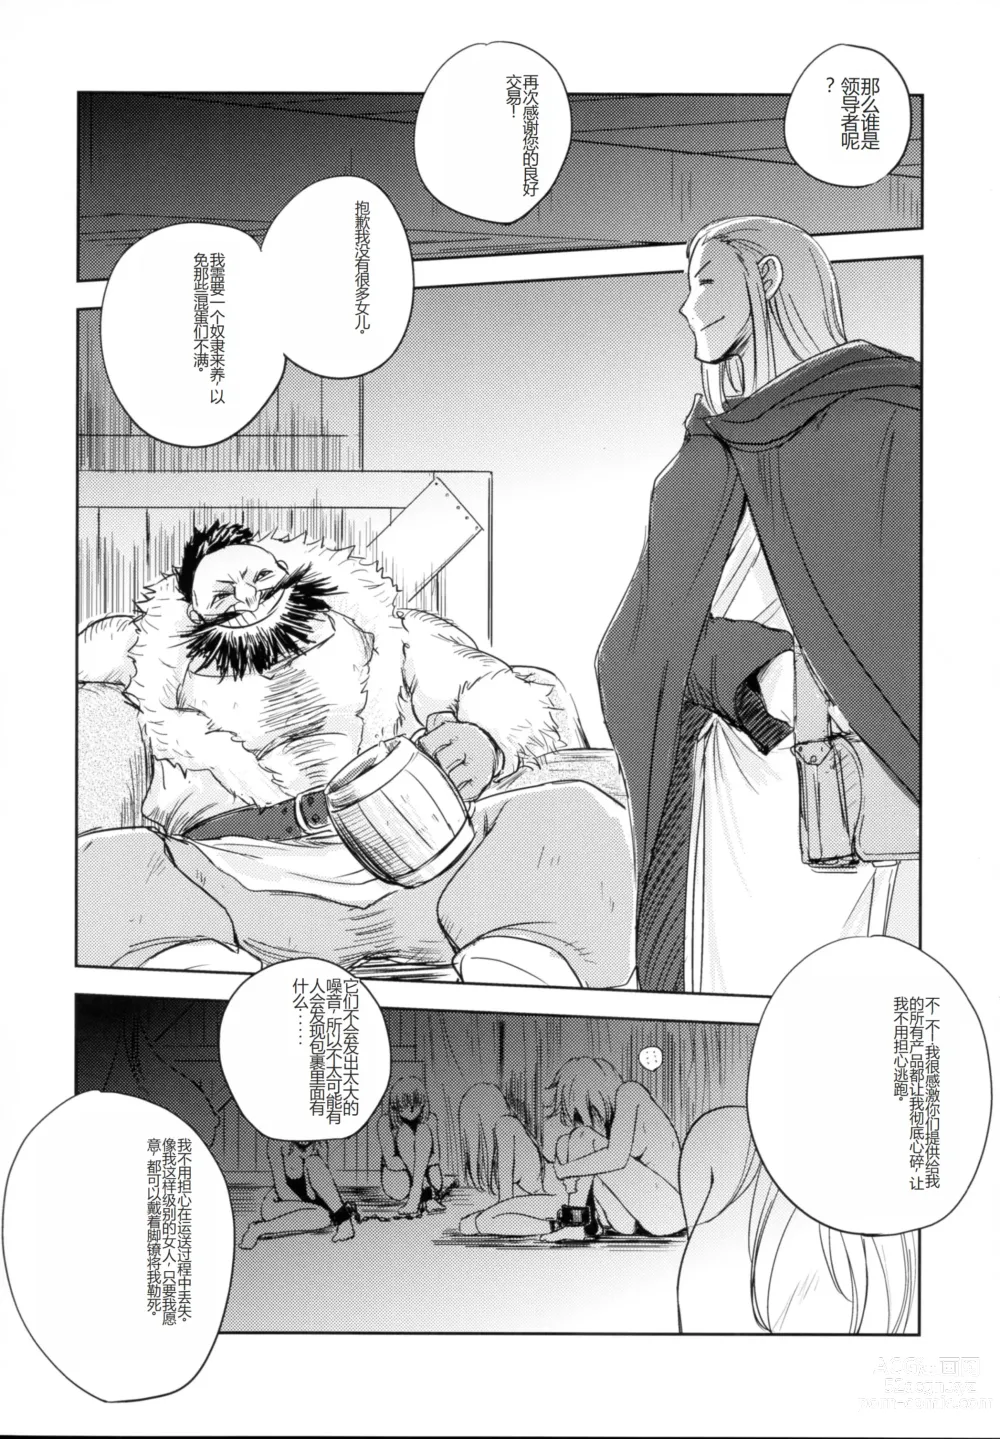 Page 28 of doujinshi GRASSENS WAR ANOTHER STORY Ex #03 Node Shinkou III